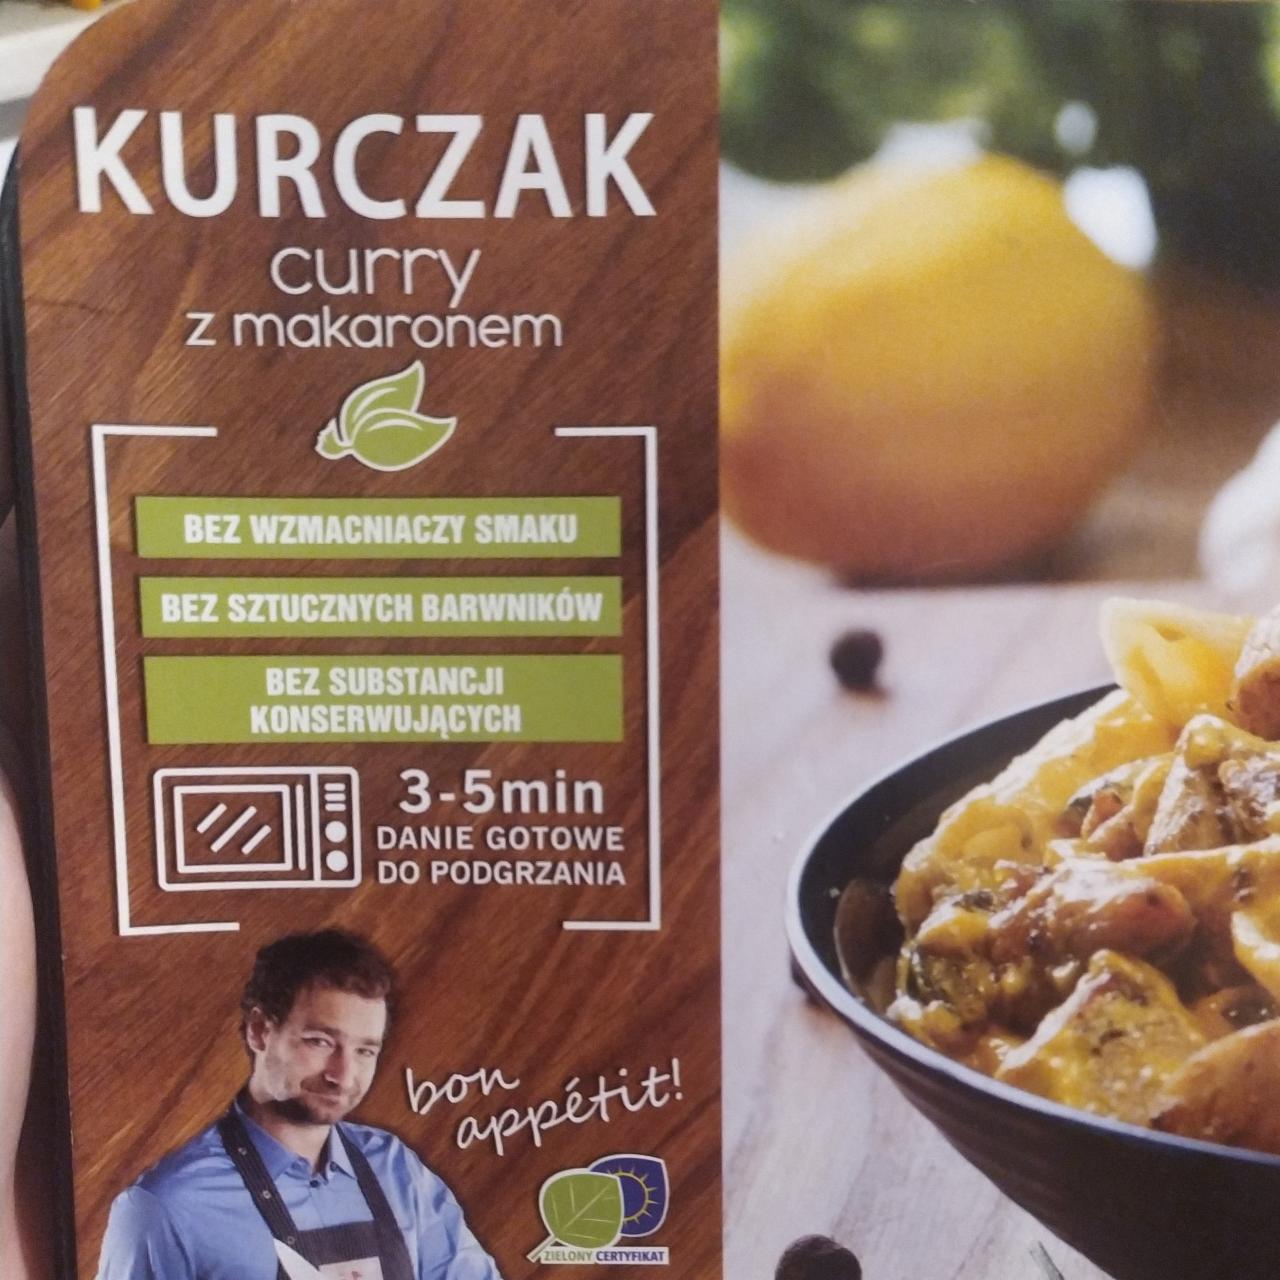 Zdjęcia - Kurczak curry z Makaronem Szubryt zakłady mięsne